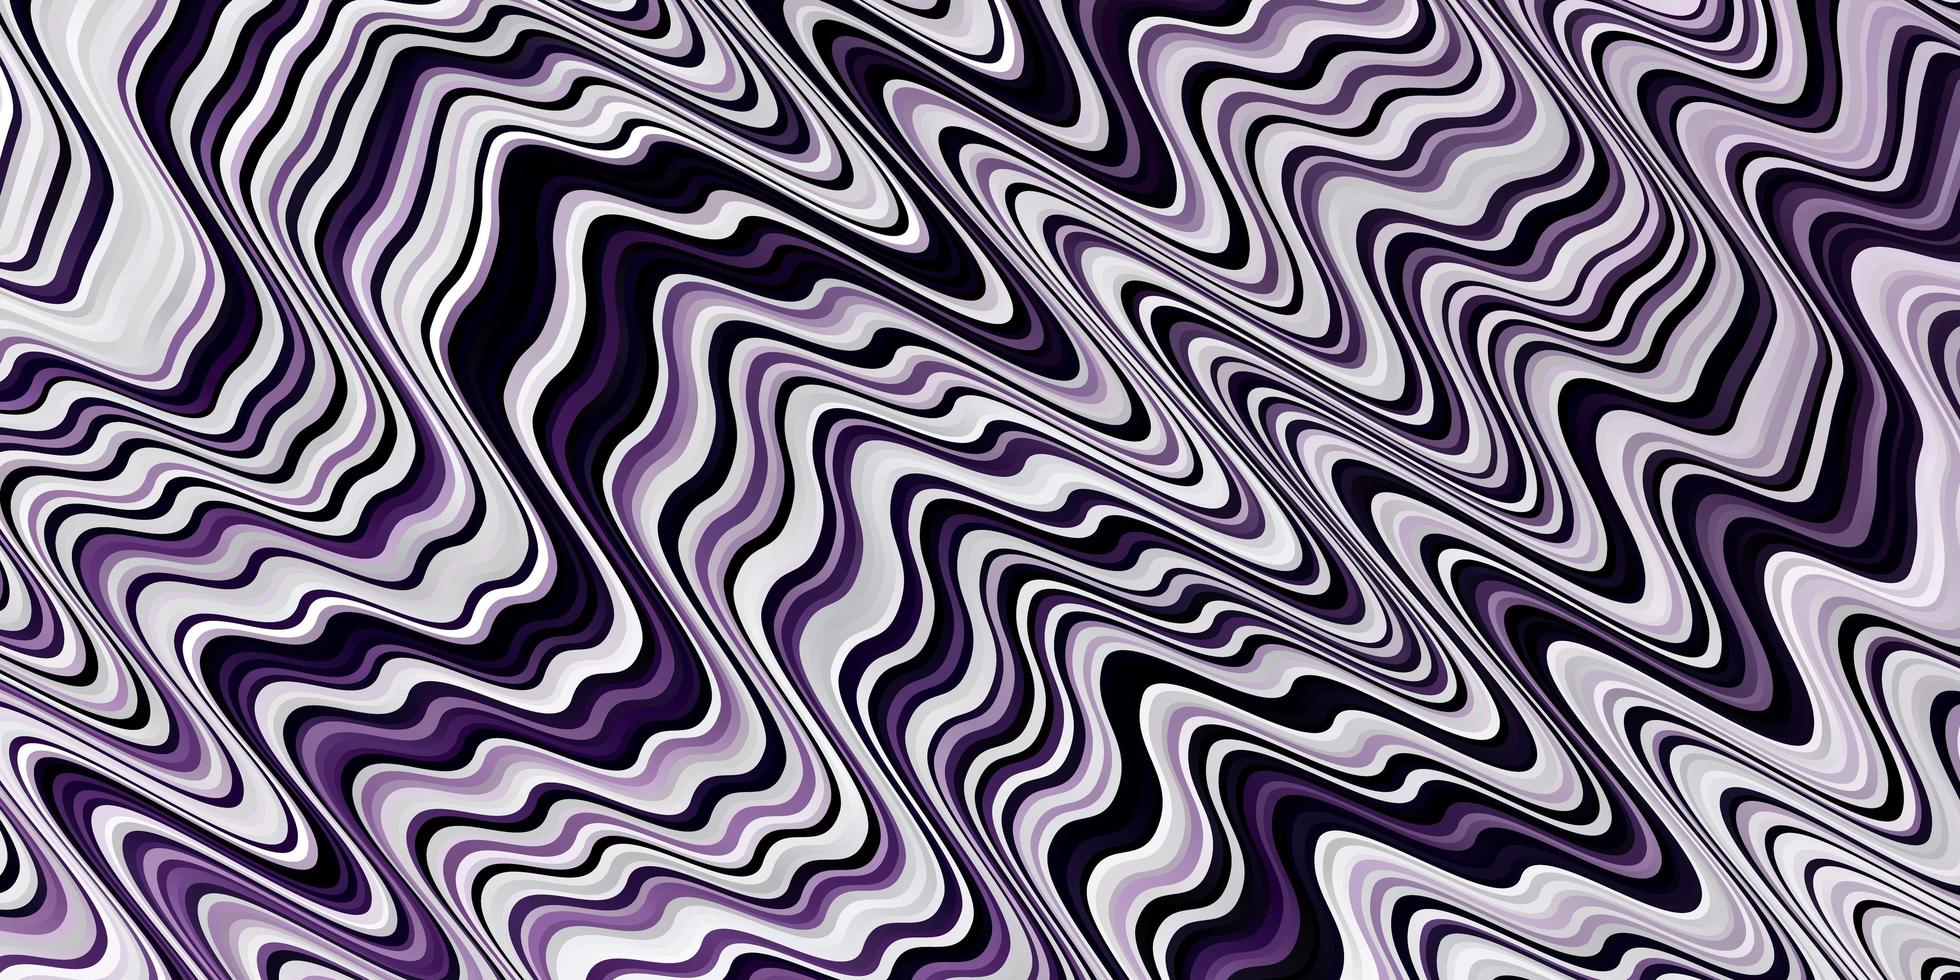 texture vecteur violet clair avec des lignes tordues illustration abstraite avec motif de lignes dégradées pour les publicités publicitaires